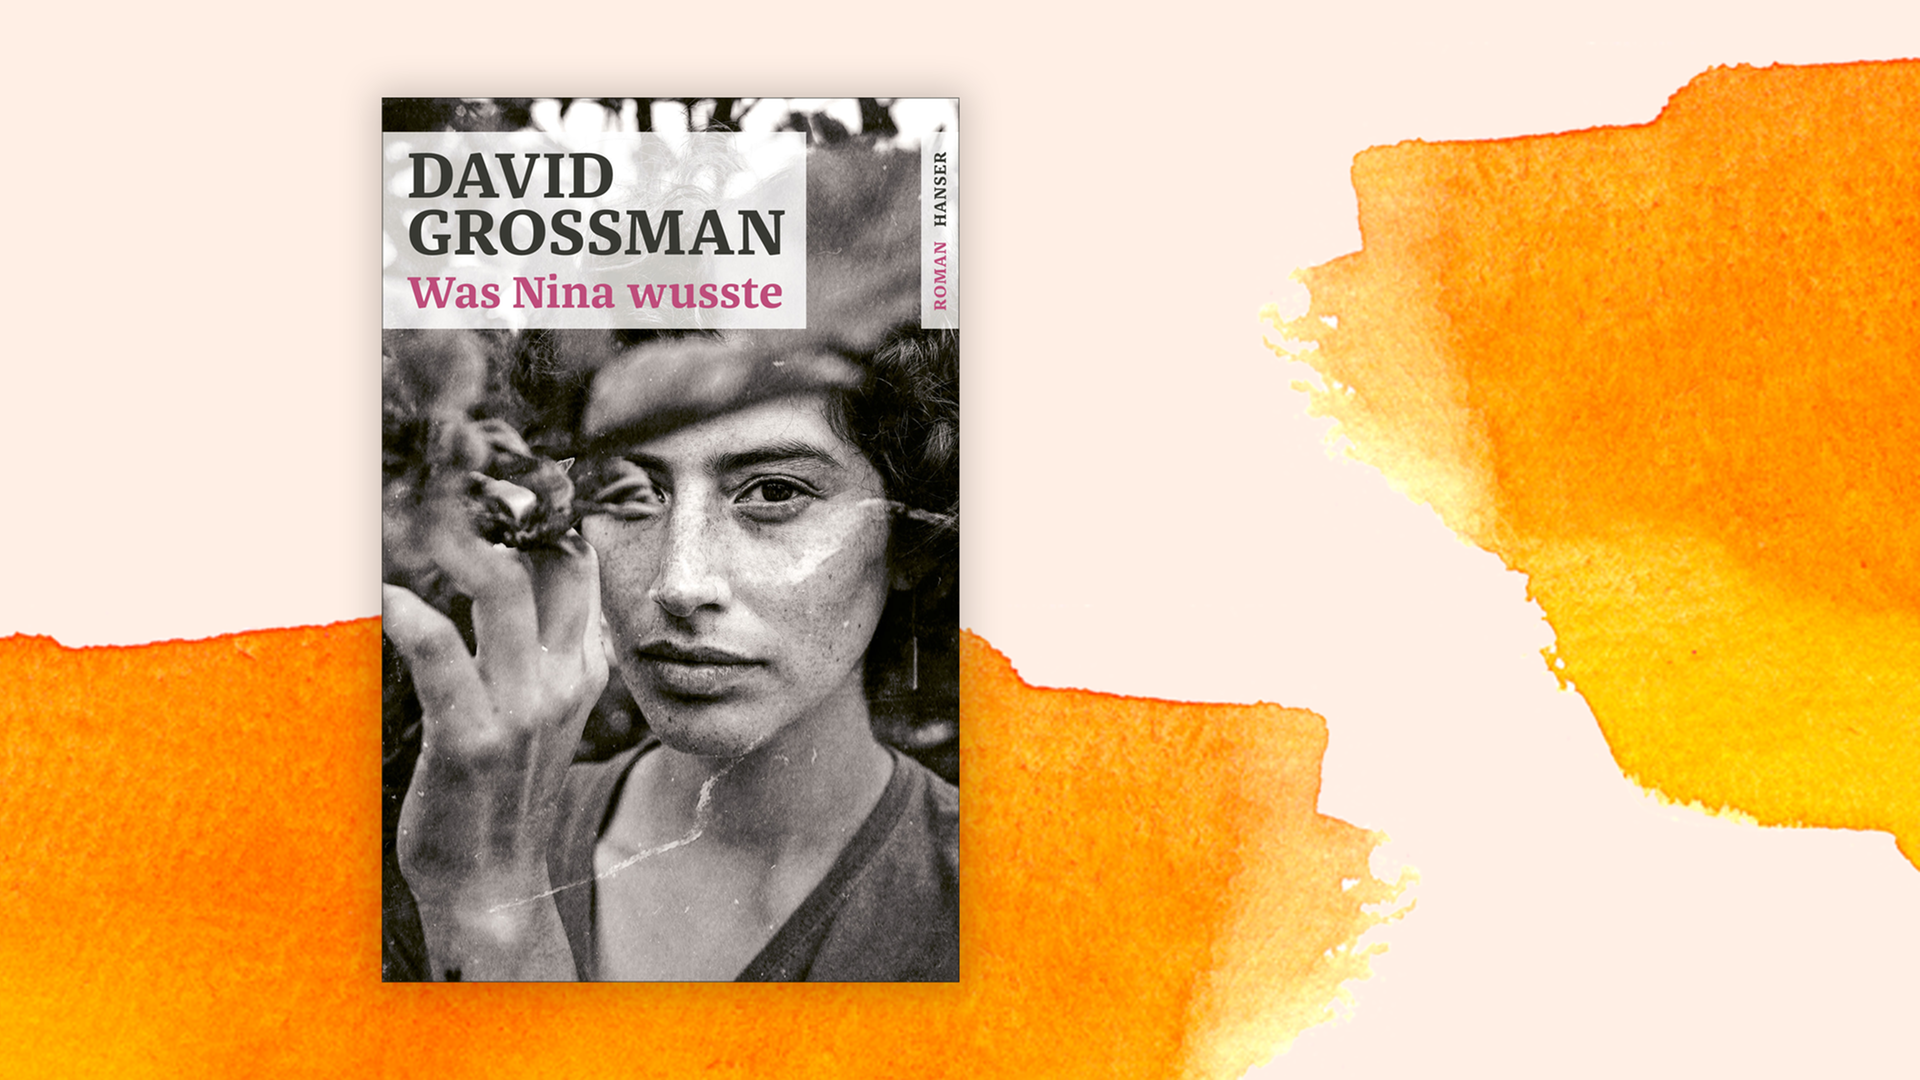 Zu sehen ist das Cover des Buches "Was Nina wusste" von David Grossman.